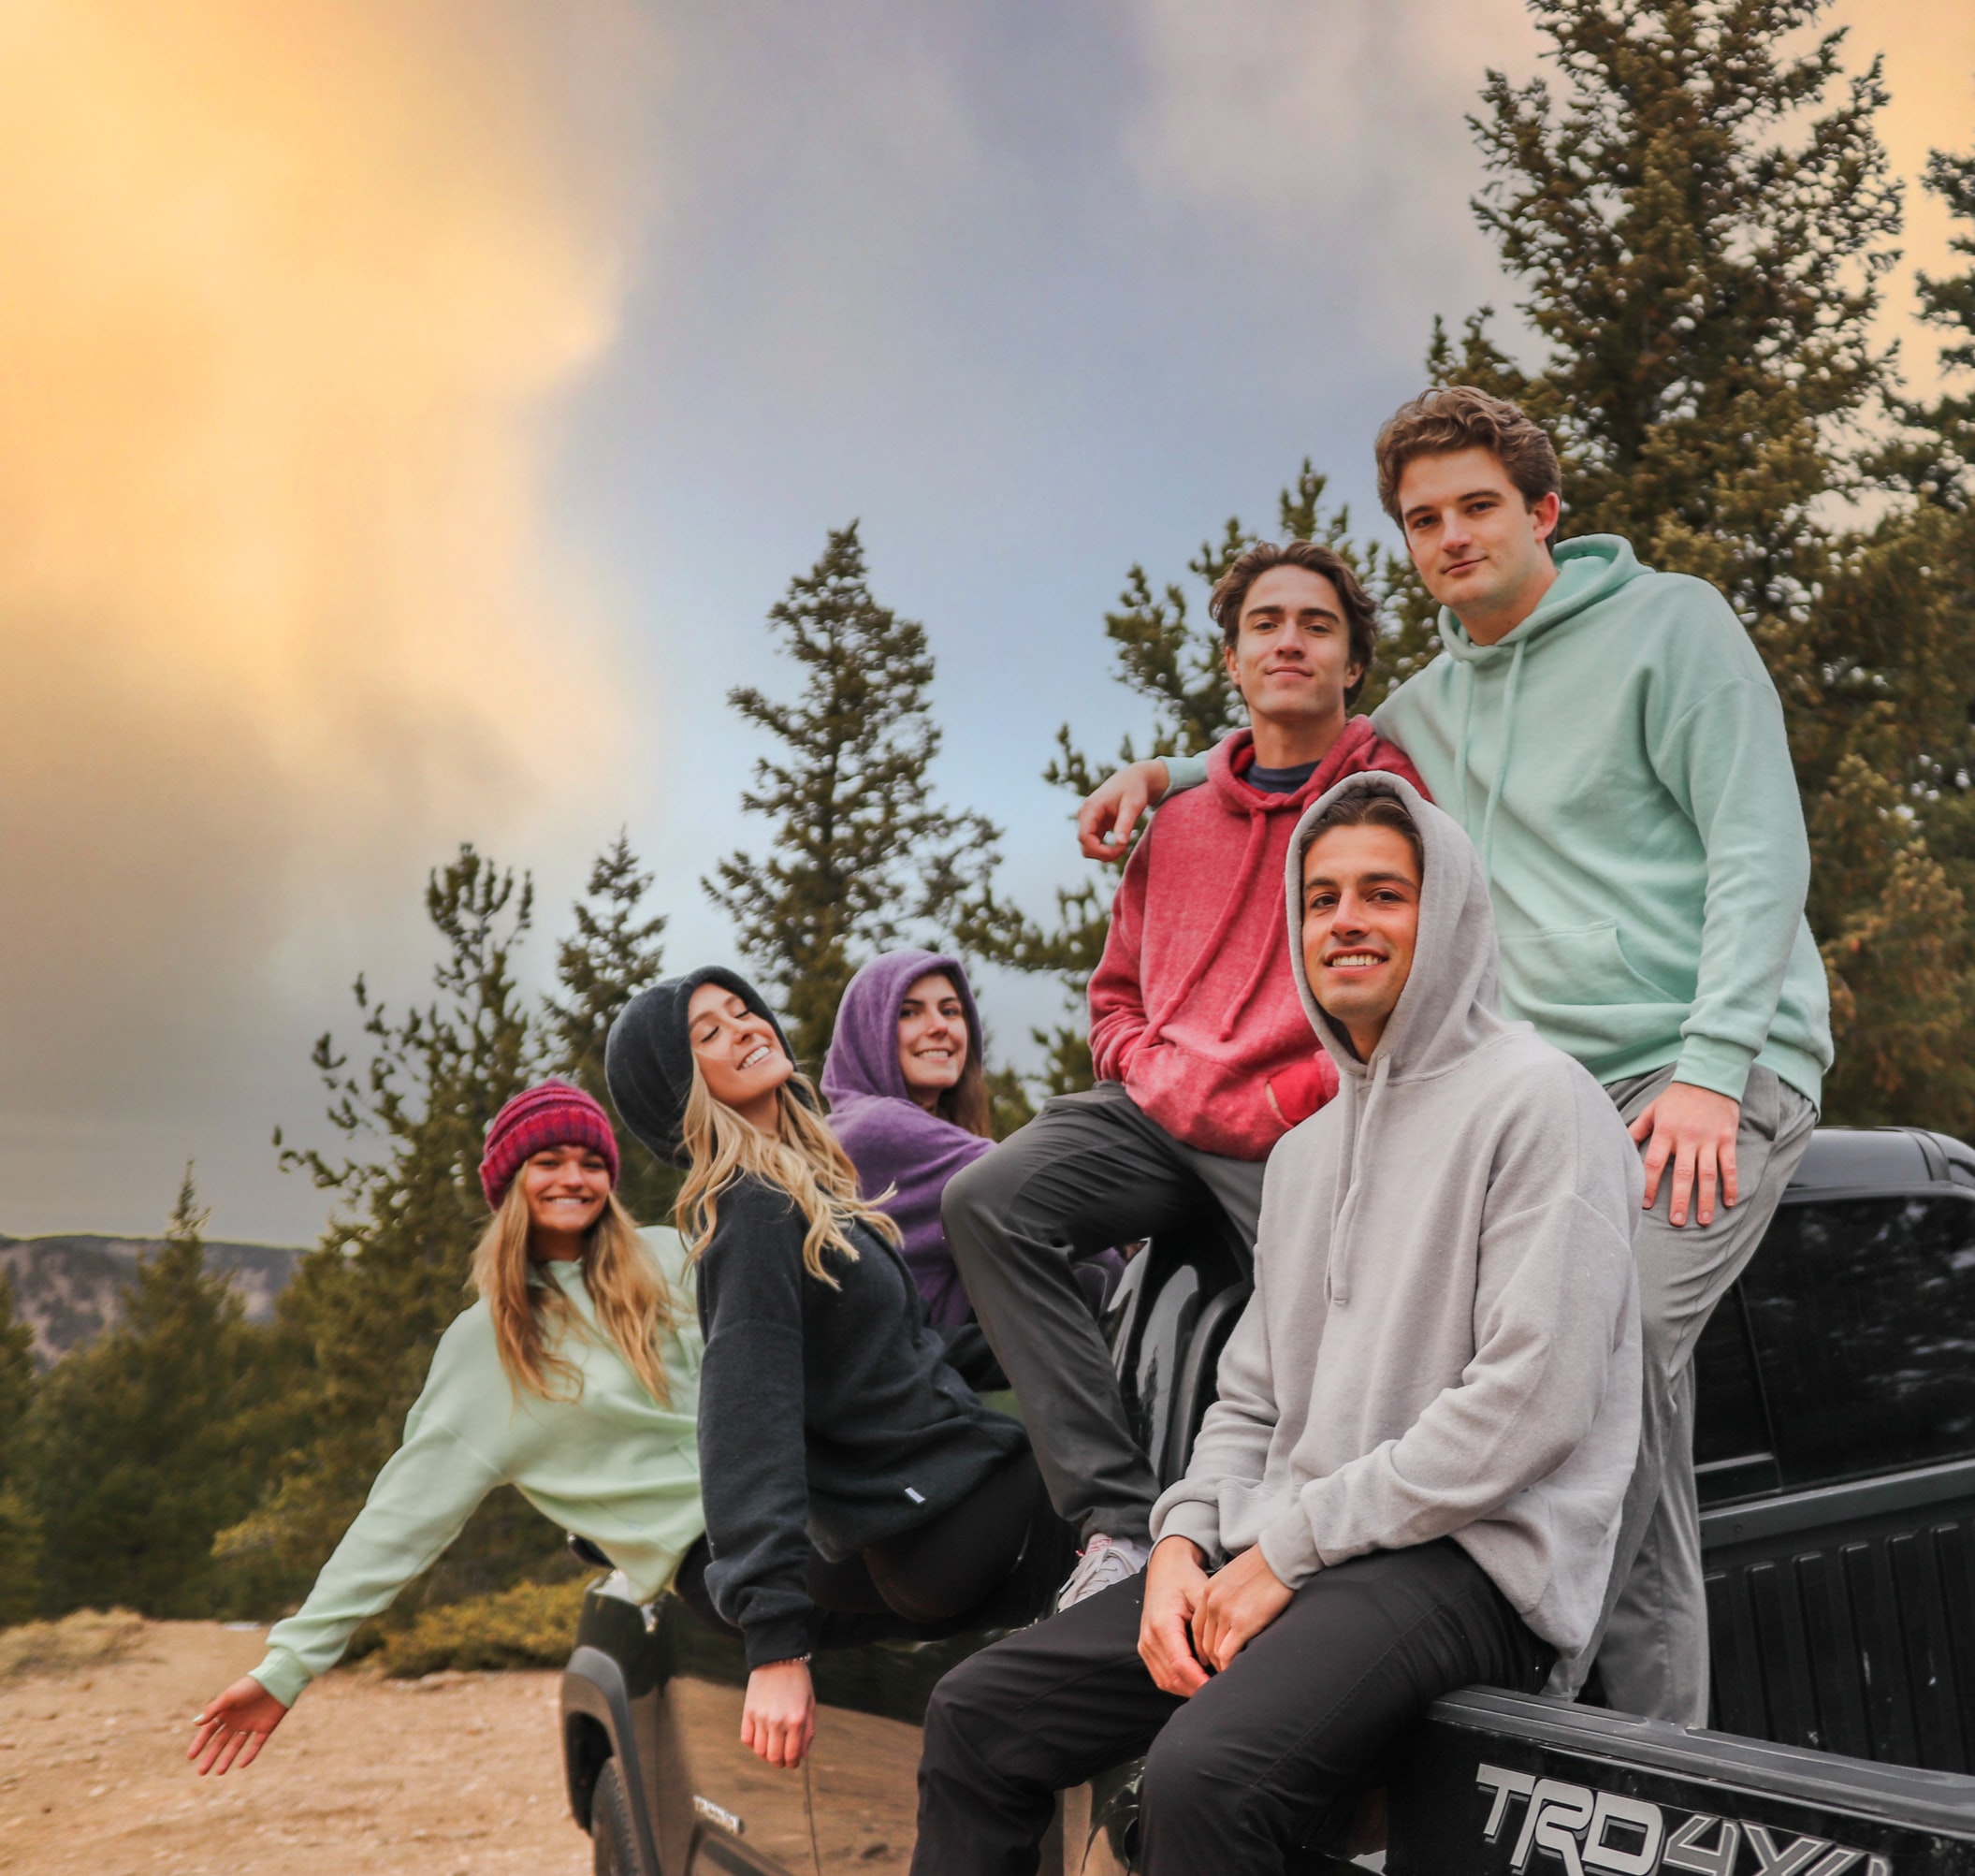 camping friends wearing hoodies